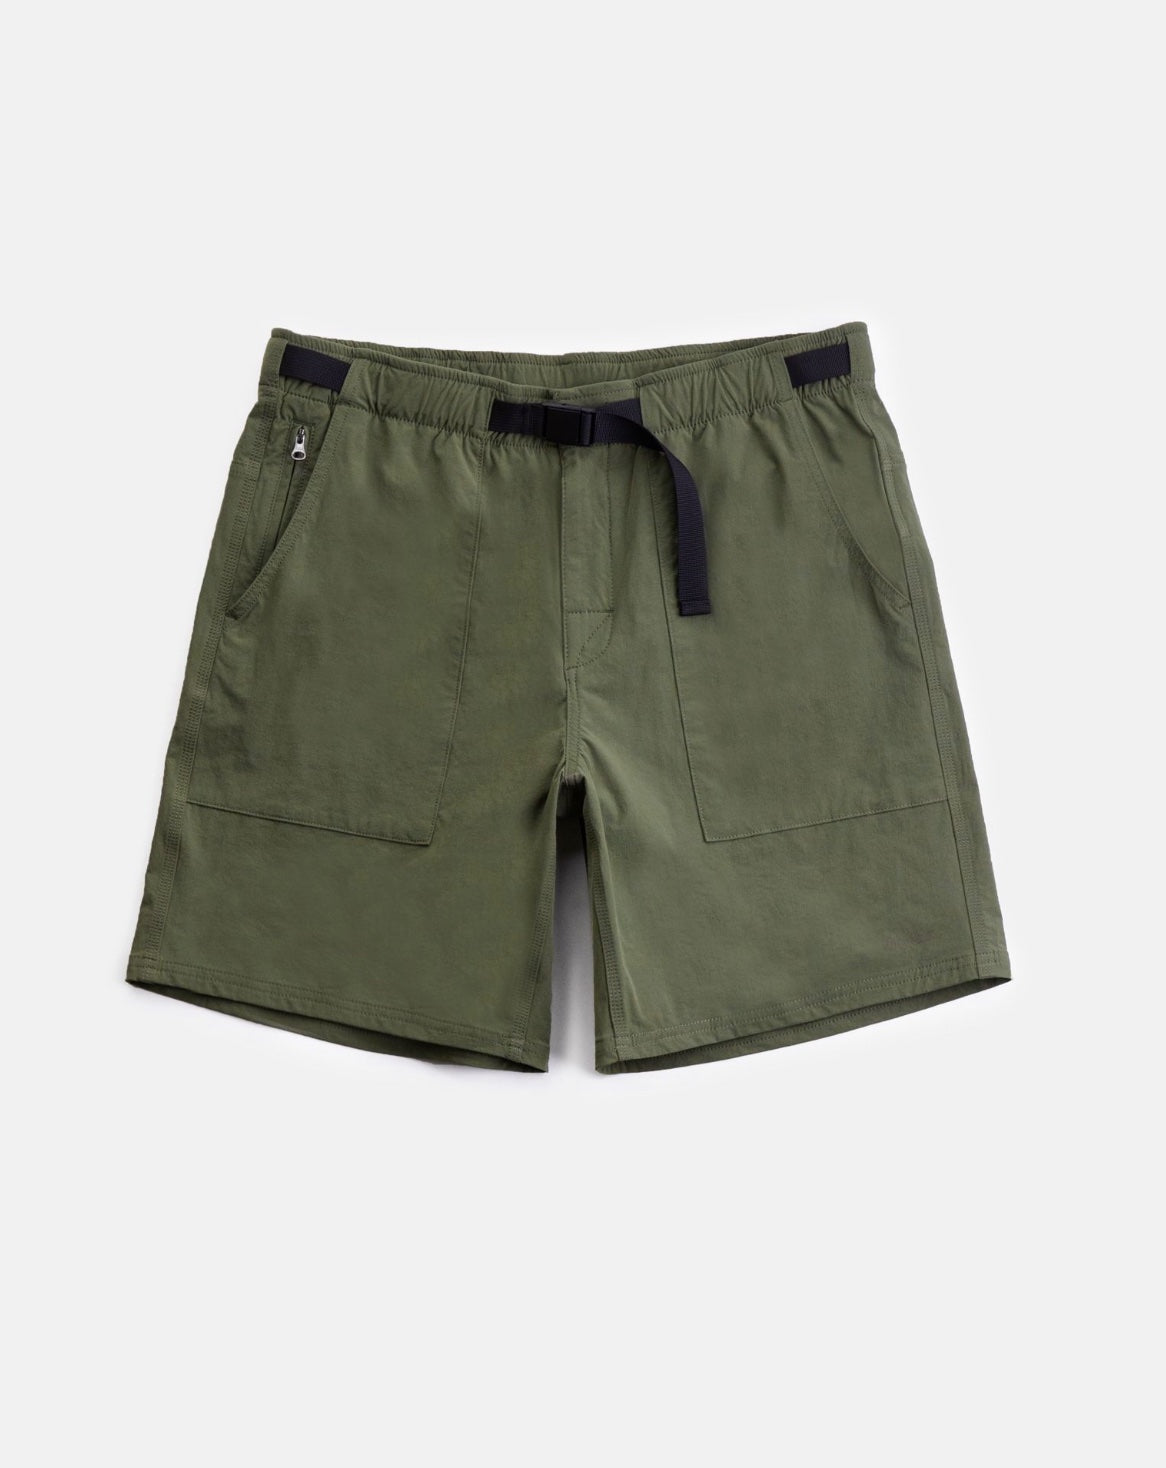 Pathfinder Shorts